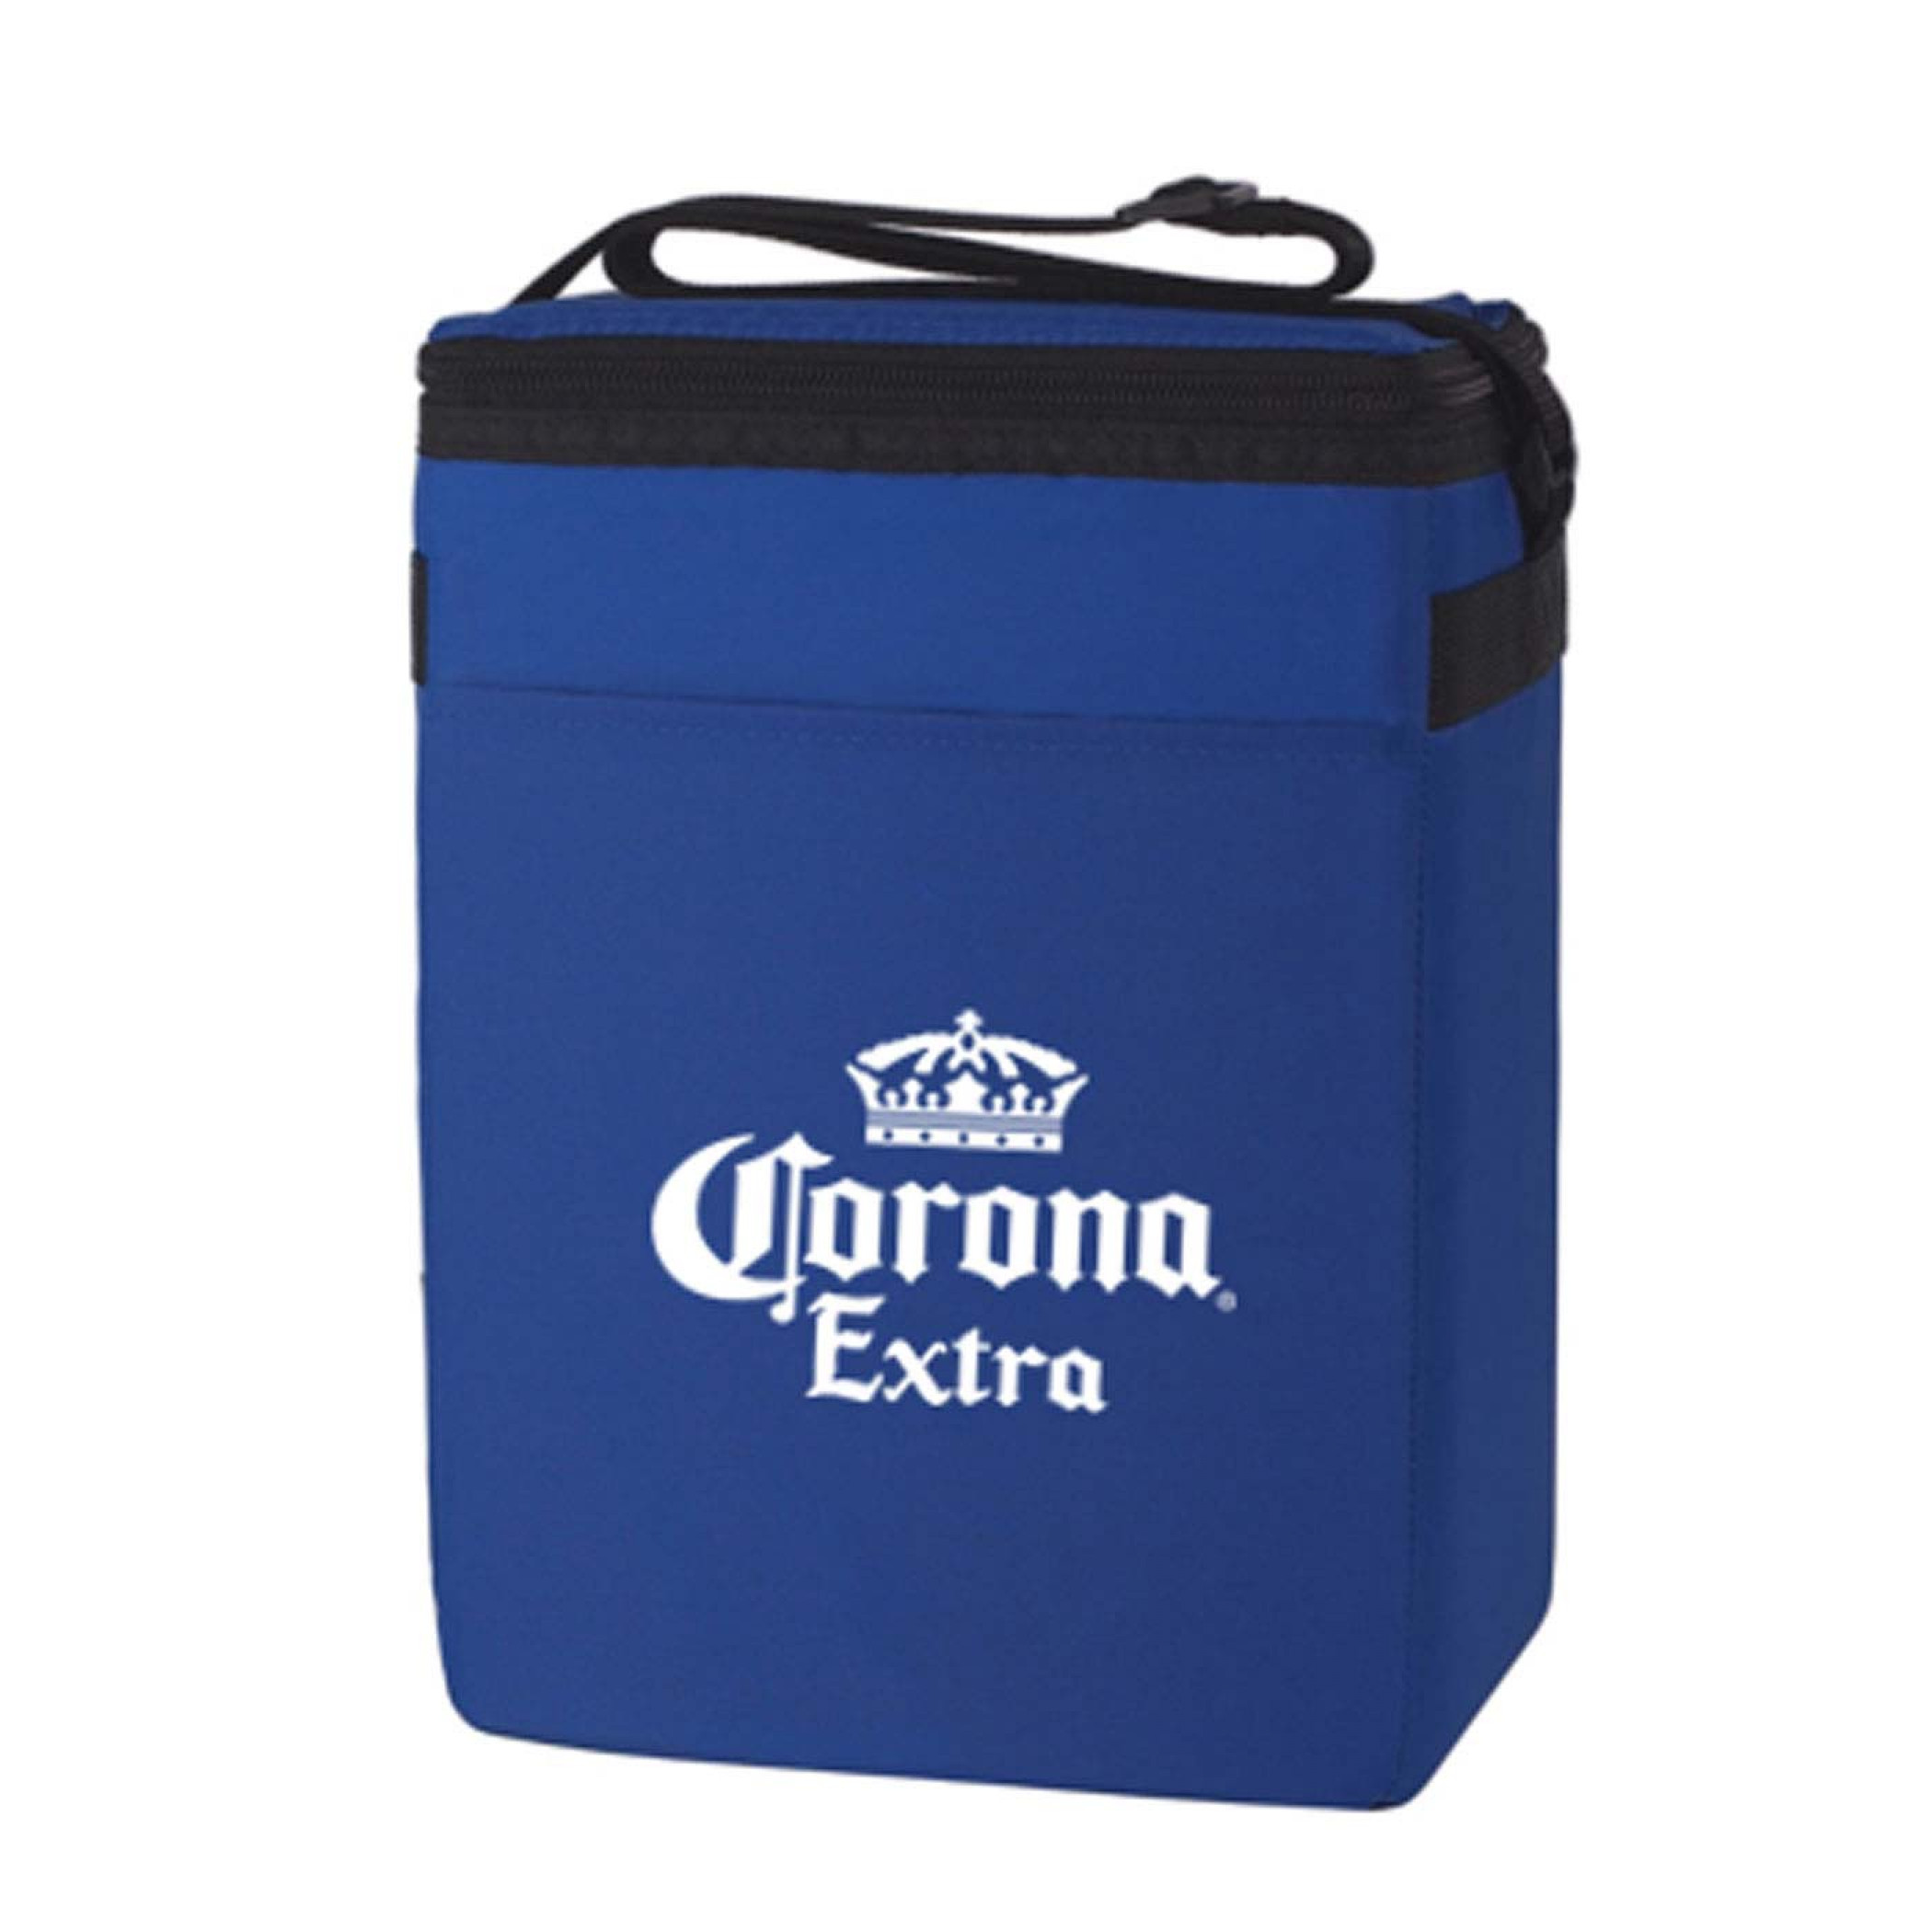 Corona Extra Cooler Bag